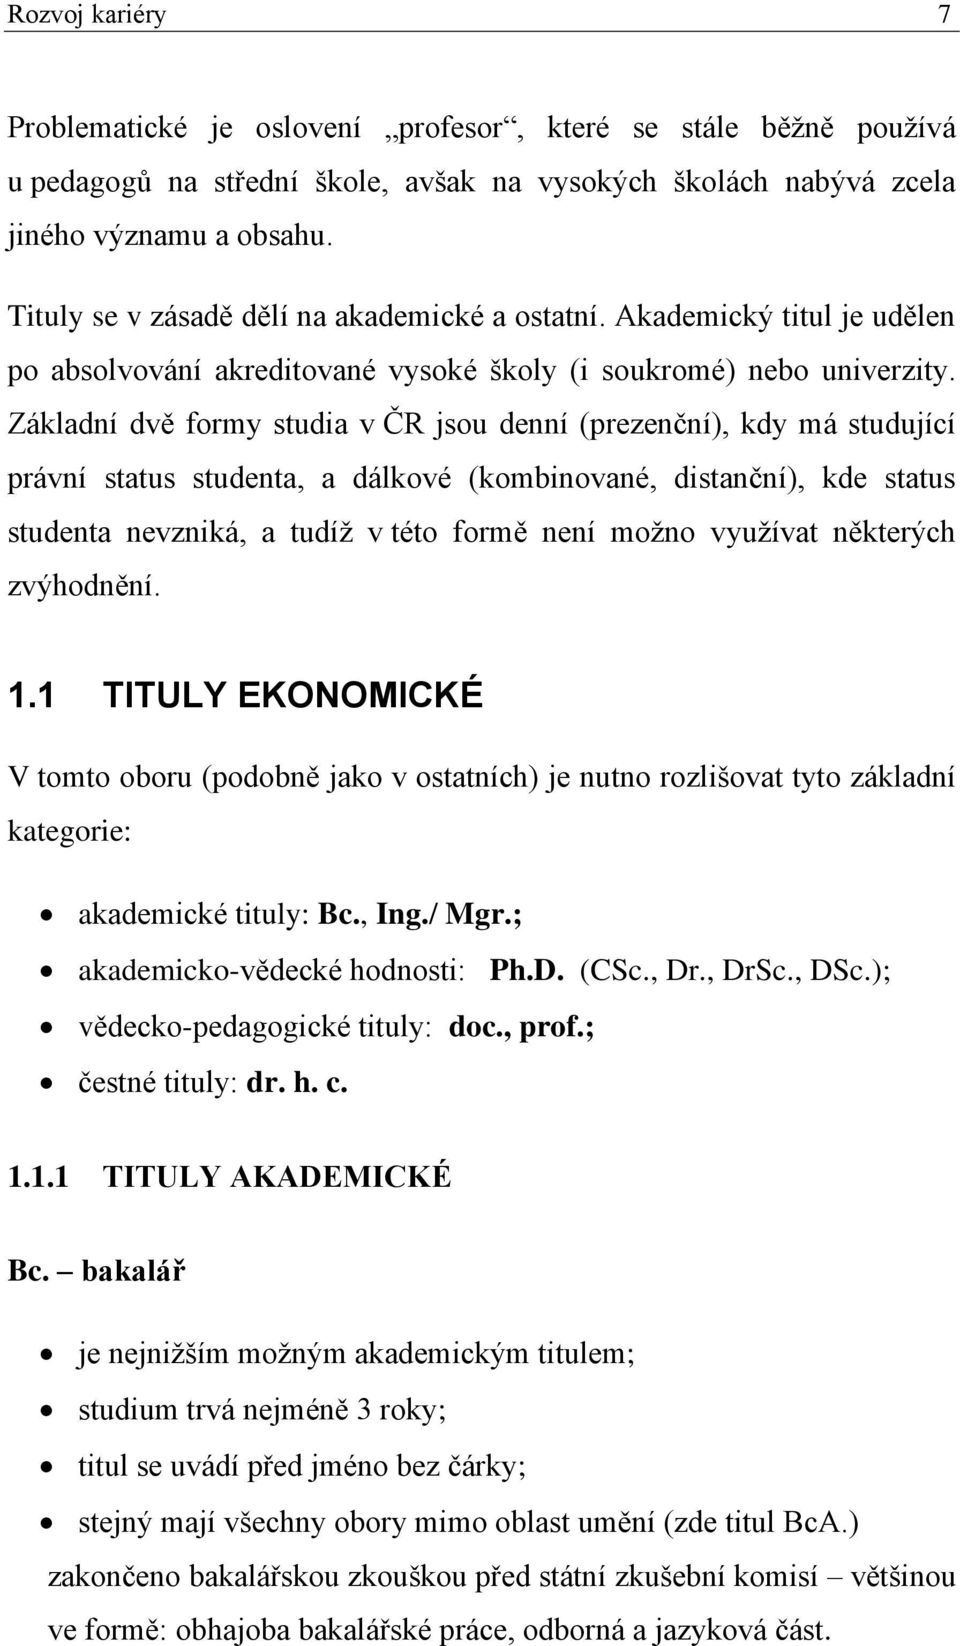 Základní dvě formy studia v ČR jsou denní (prezenční), kdy má studující právní status studenta, a dálkové (kombinované, distanční), kde status studenta nevzniká, a tudíž v této formě není možno